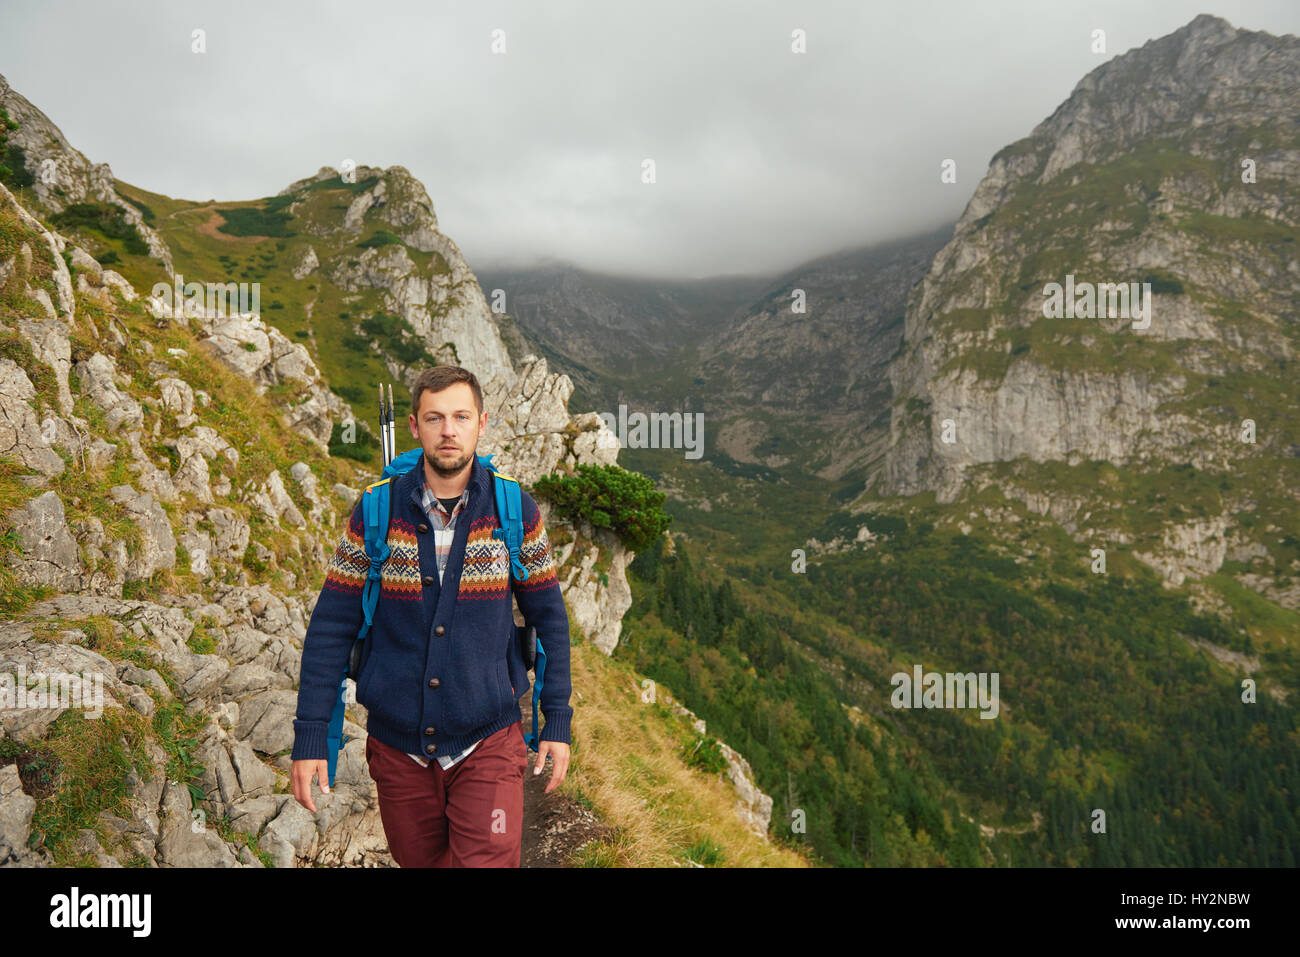 Lone uomo trekking sul sentiero roccioso in montagna Foto Stock